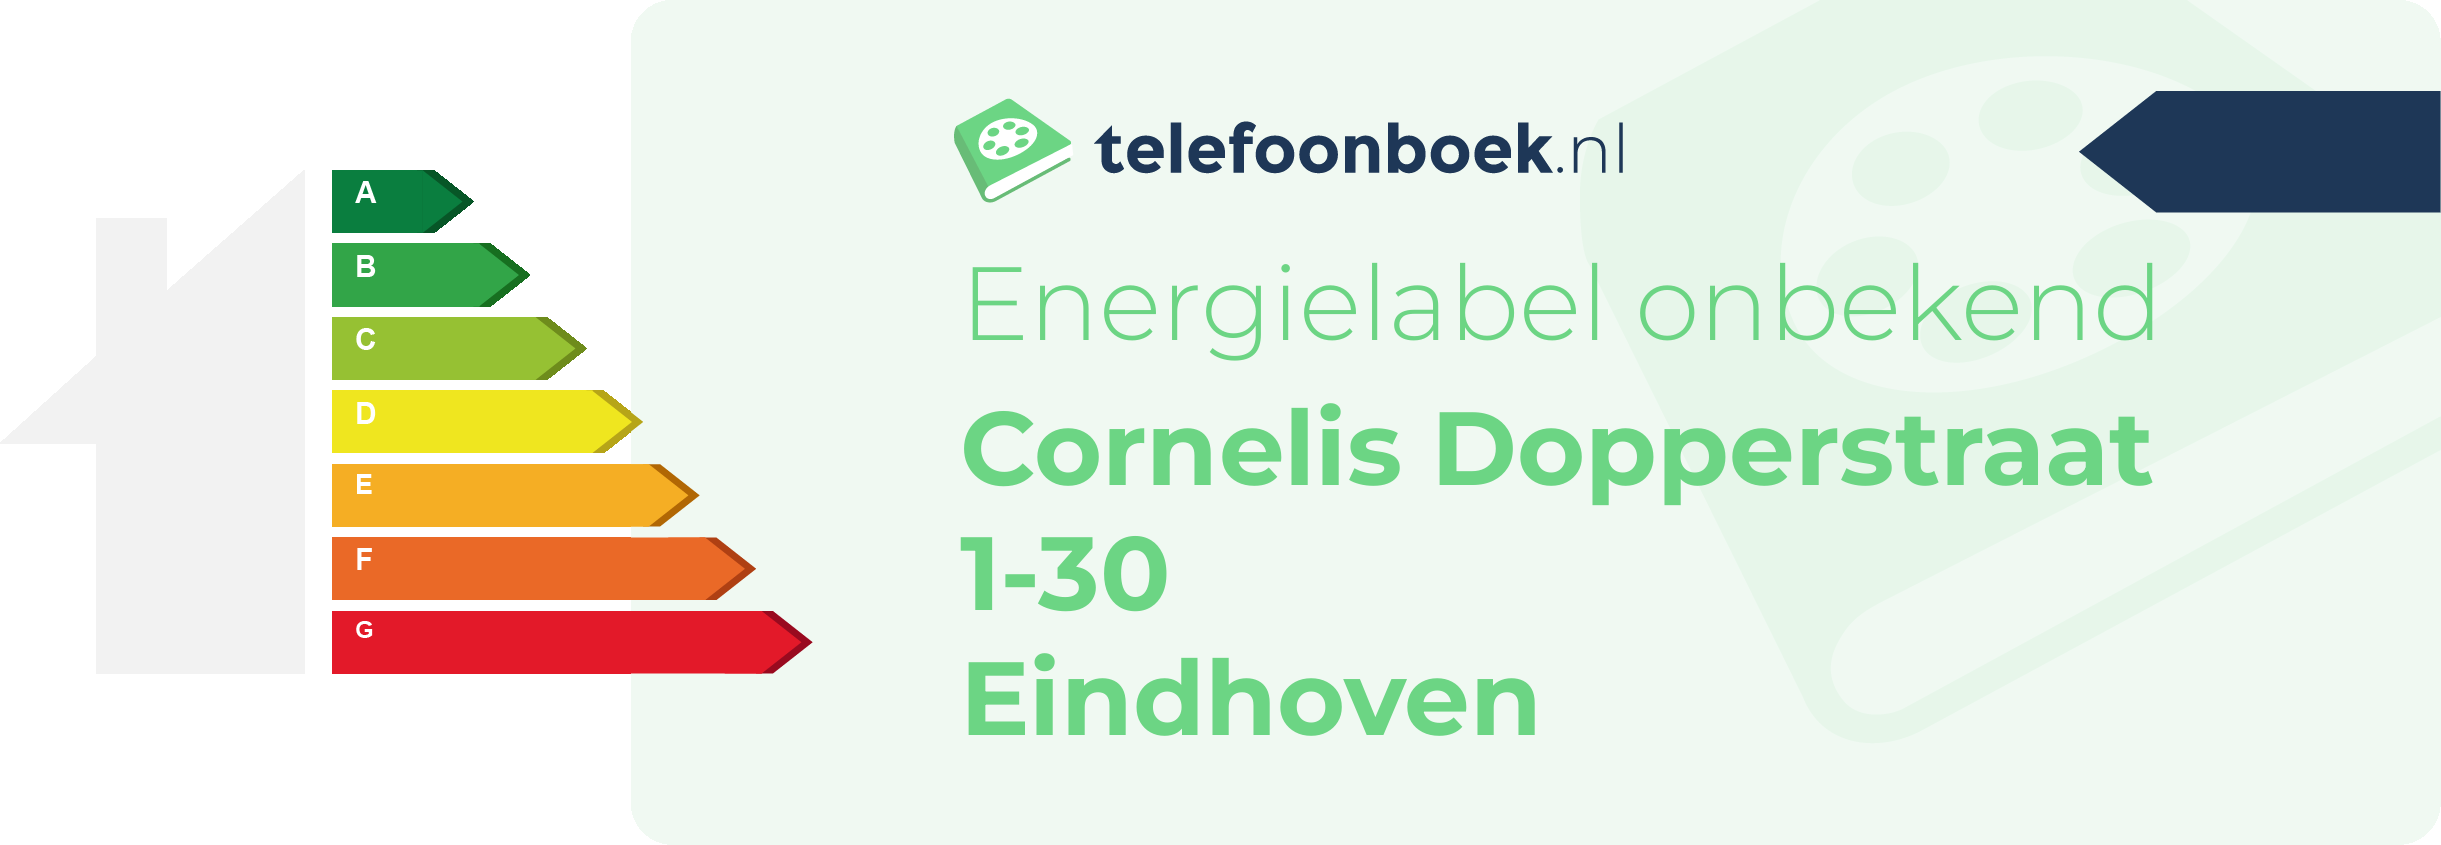 Energielabel Cornelis Dopperstraat 1-30 Eindhoven